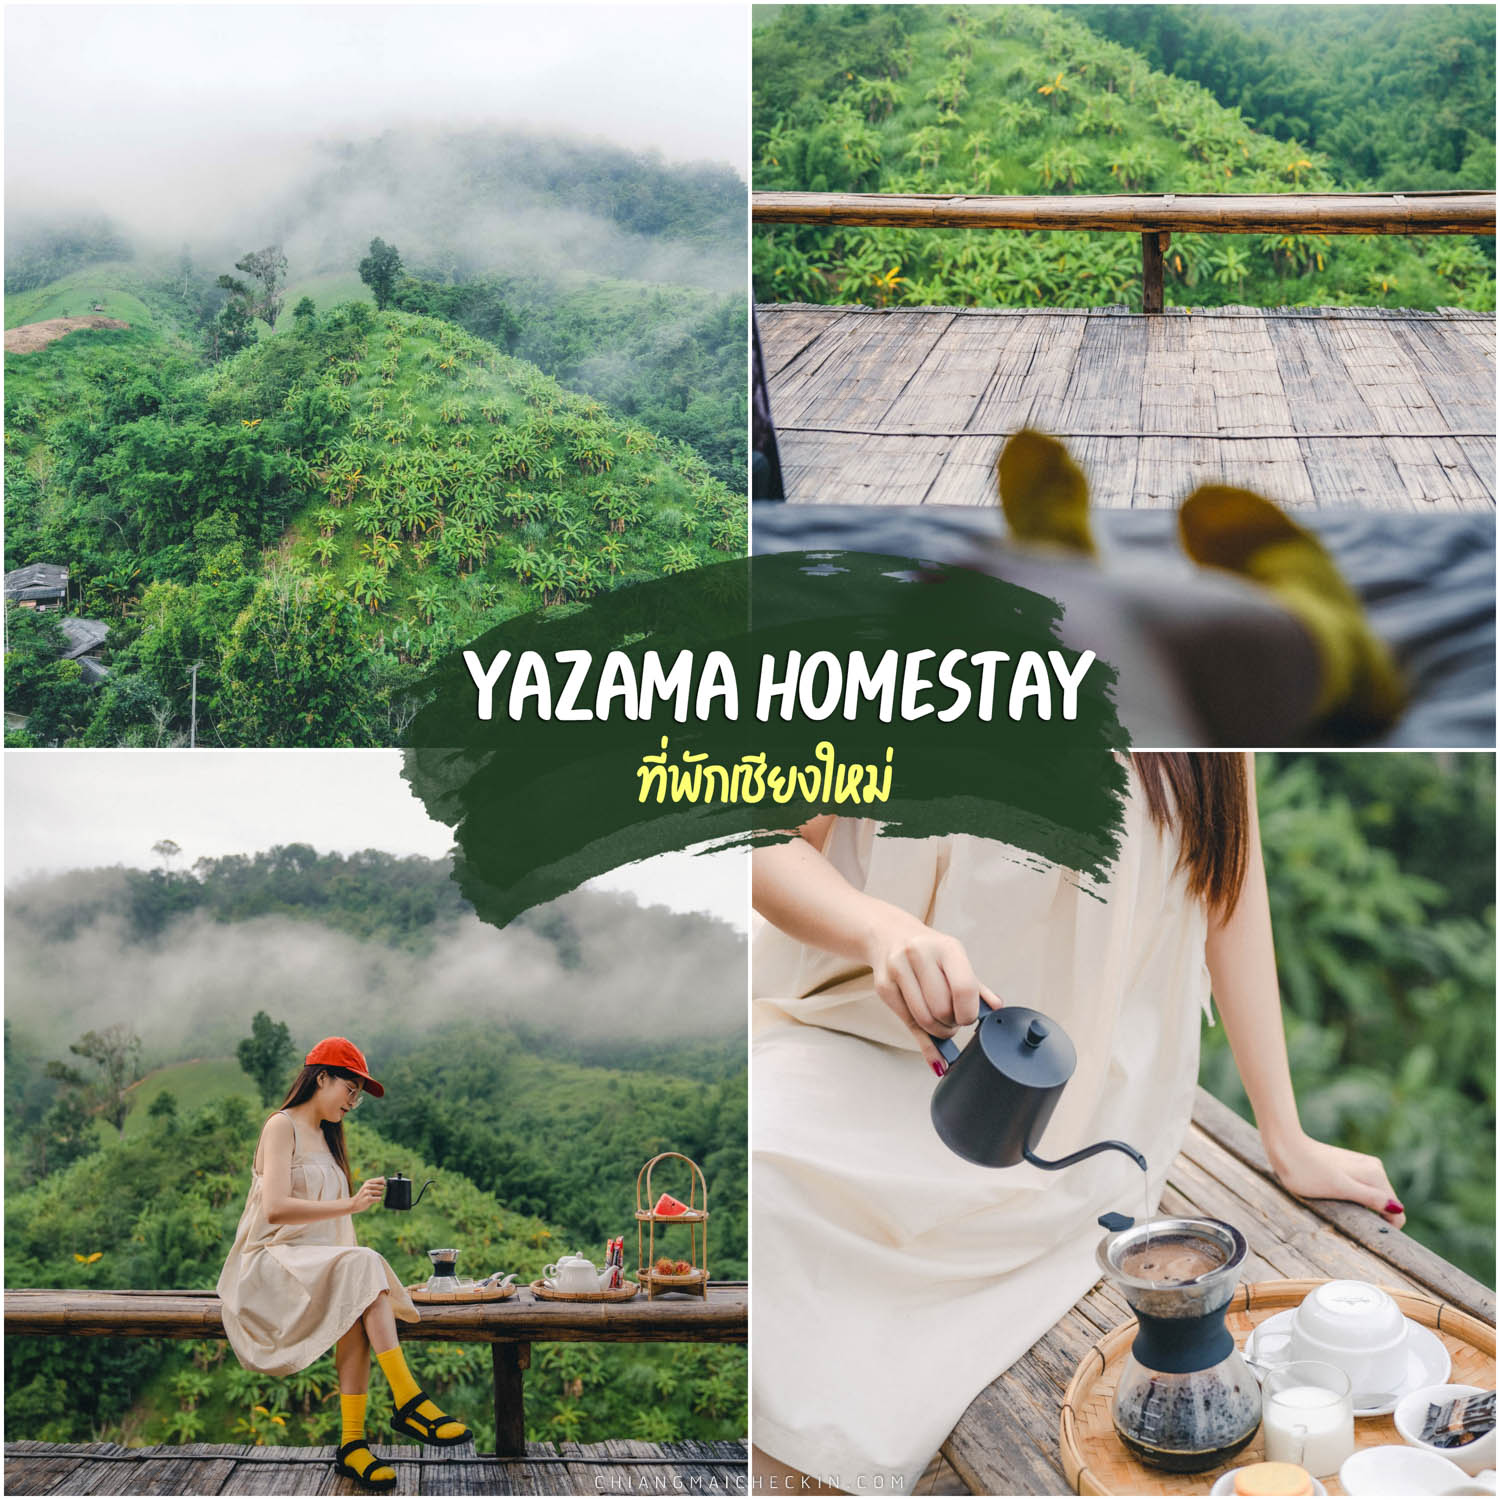 Yazama HomeStay Chiangmai, размещение в Чиангмае Бамбуковый дом в прохладном стиле Непревзойденный вид на миллион долларов Пить чай очень приятно.